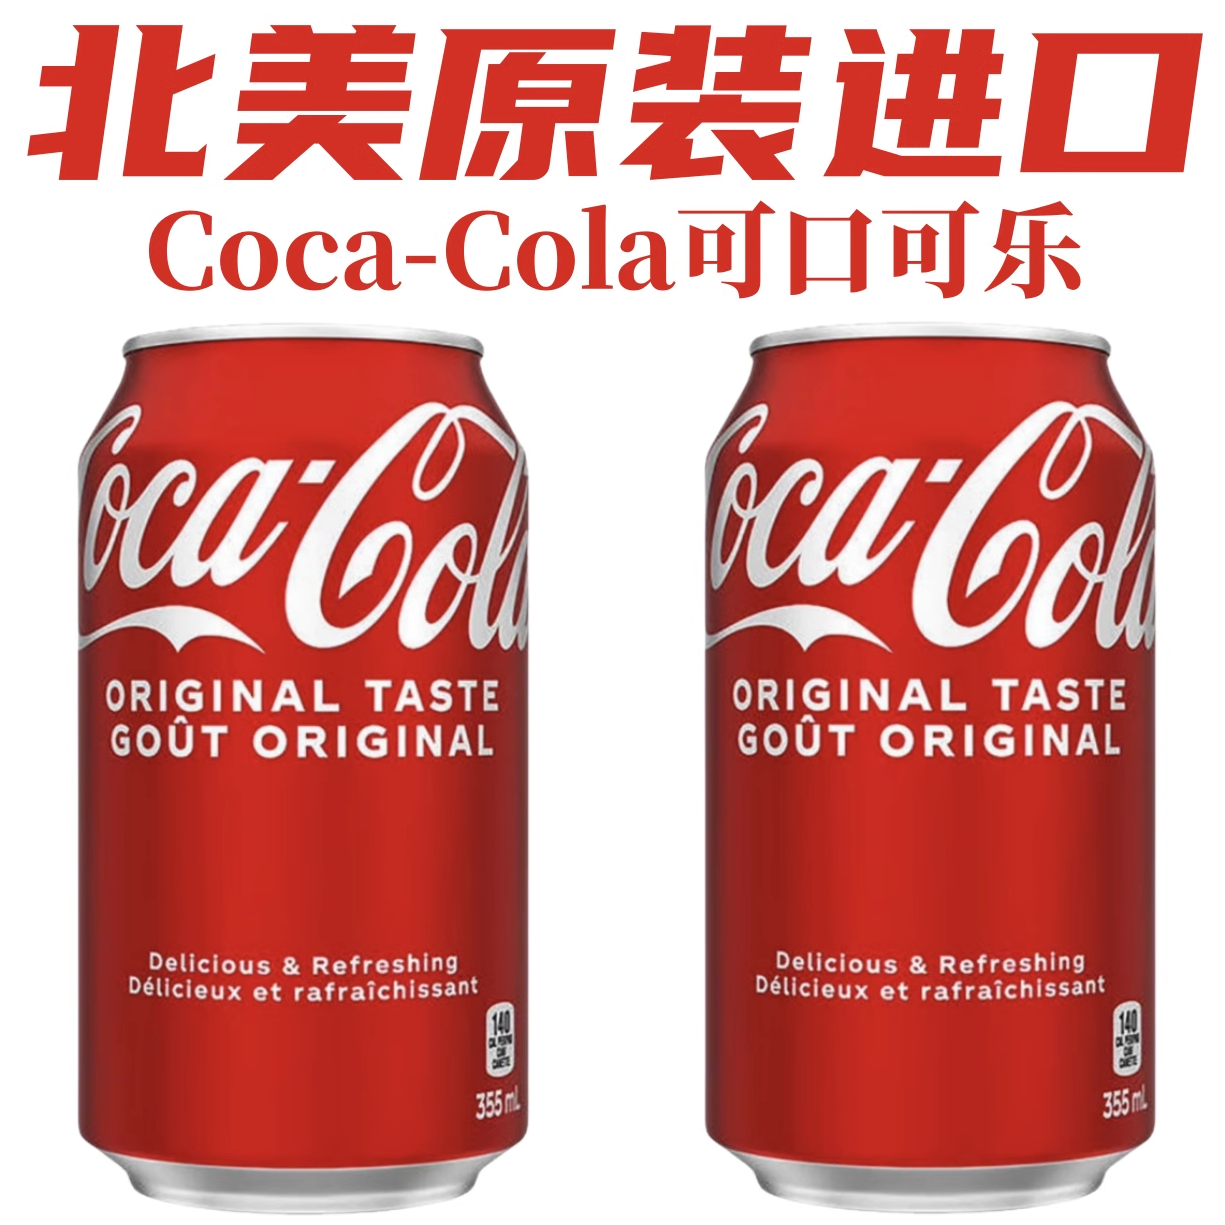 北美原瓶进口Coca-Cola加拿大版可口可乐碳酸饮料易拉罐355ml /瓶